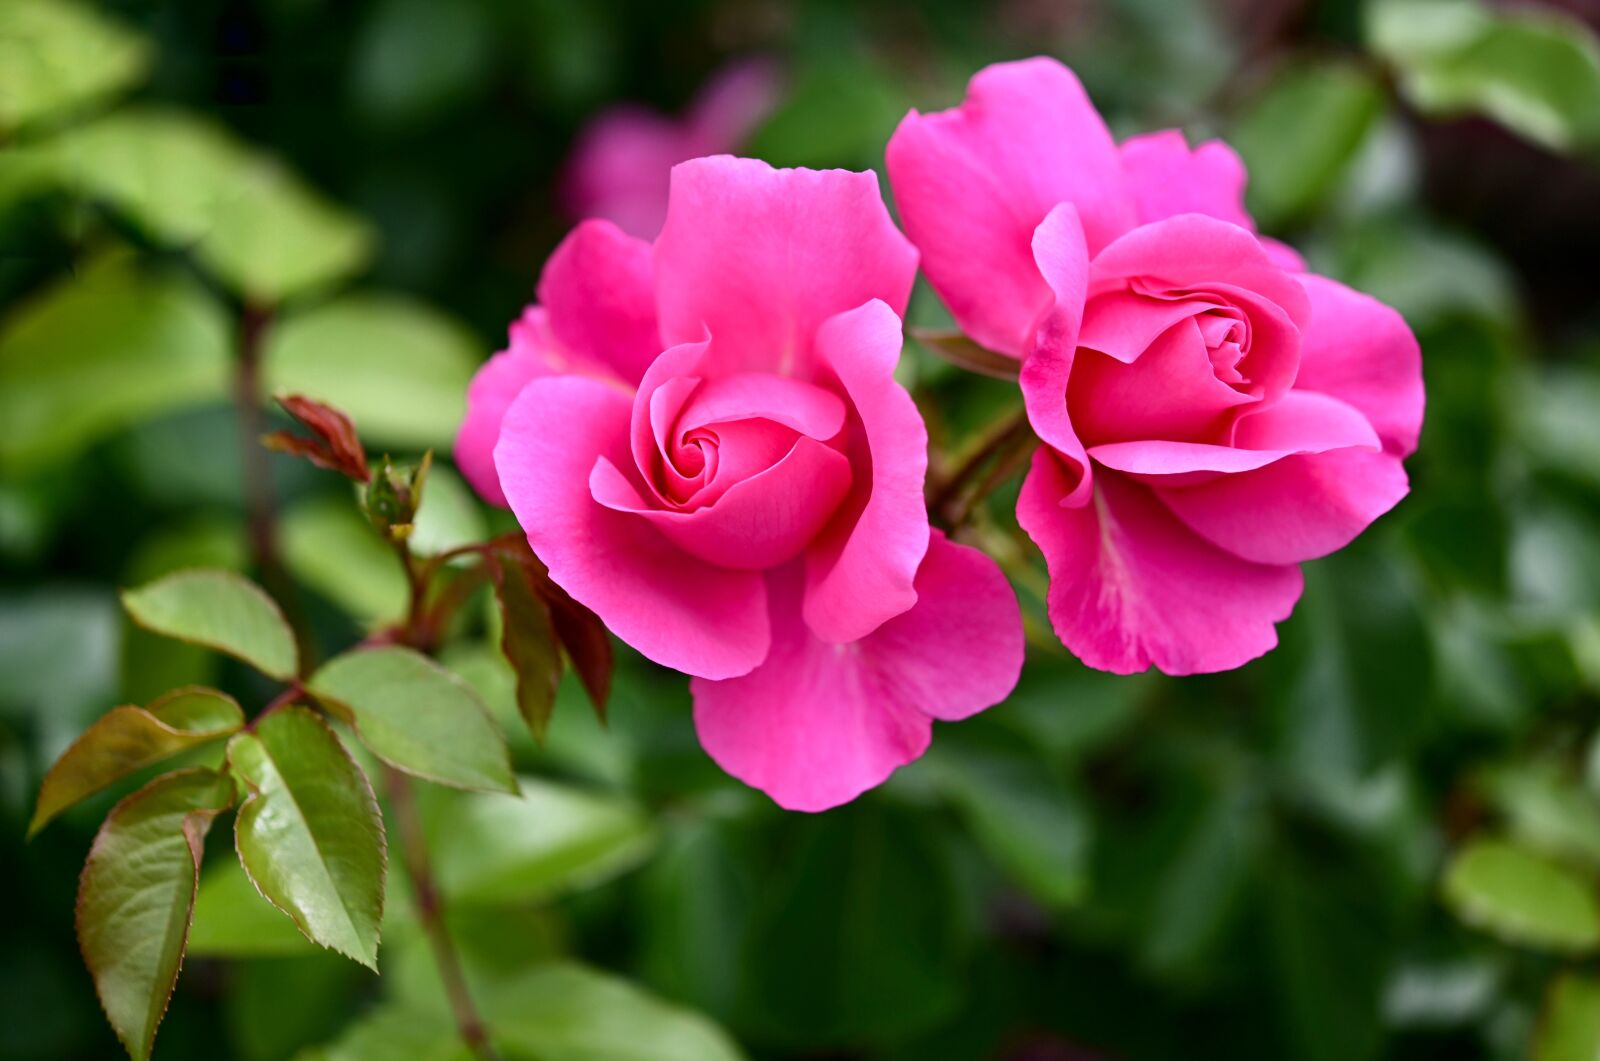 Nikon Z6 sample photo. Rose, rose bloom, pink photography